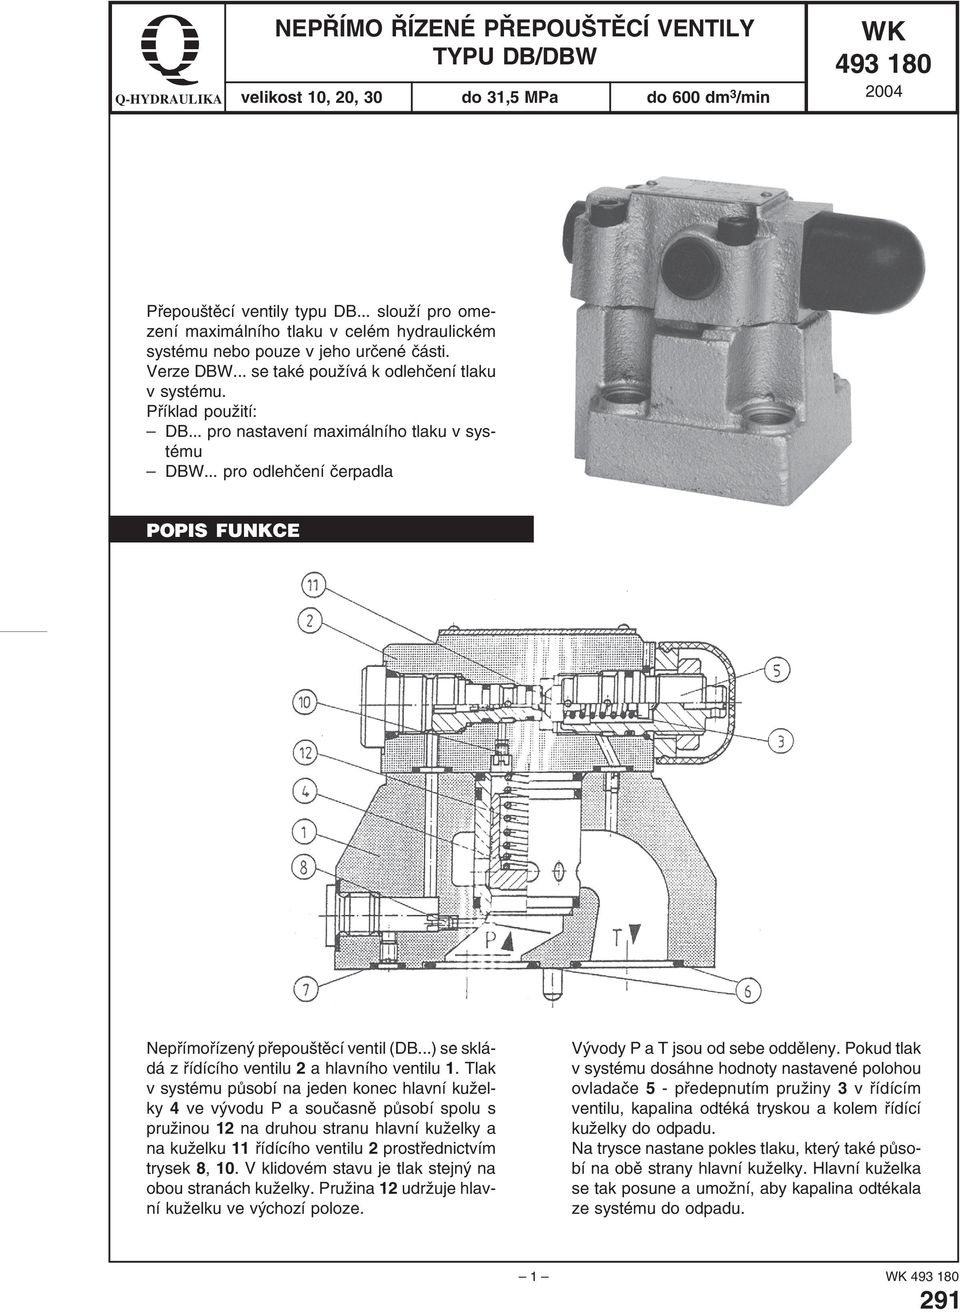 .. pro nastavení maximálního tlaku v systému DBW... pro odlehčení čerpadla POPIS FUNKCE Nepřímořízený přepouštěcí ventil (DB...) se skládá z řídícího ventilu 2 a hlavního ventilu 1.